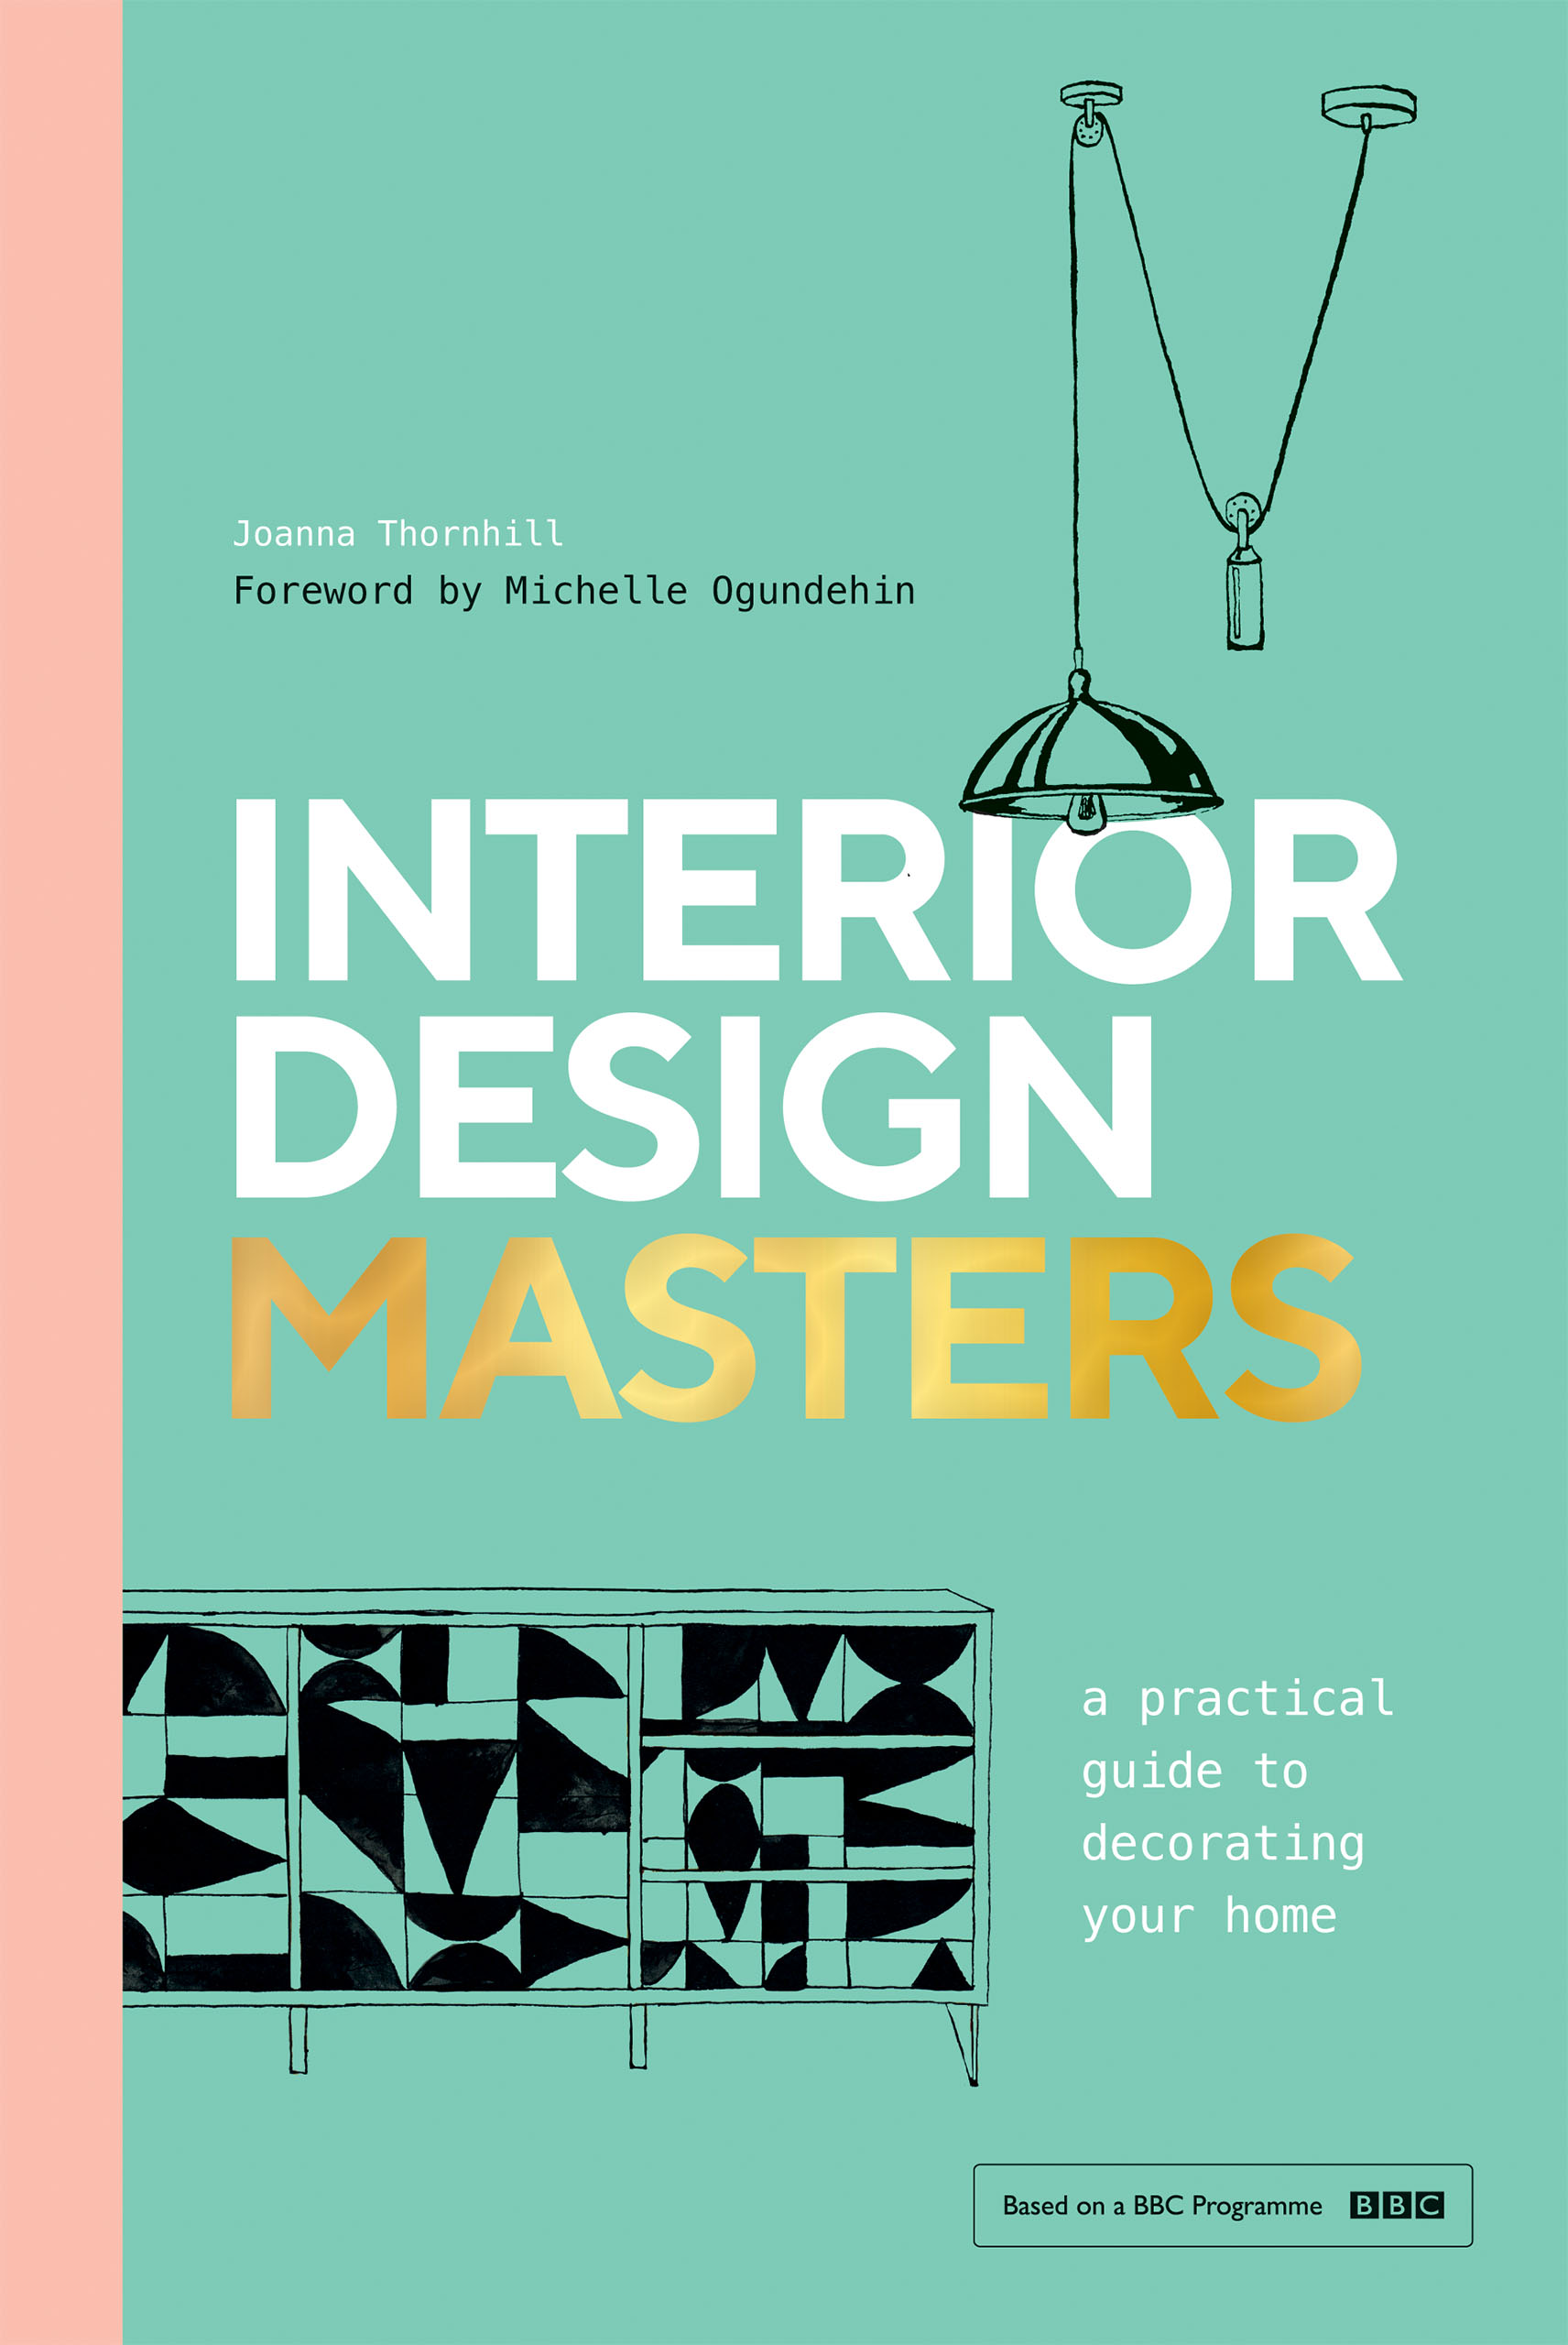 Interior Design Masters